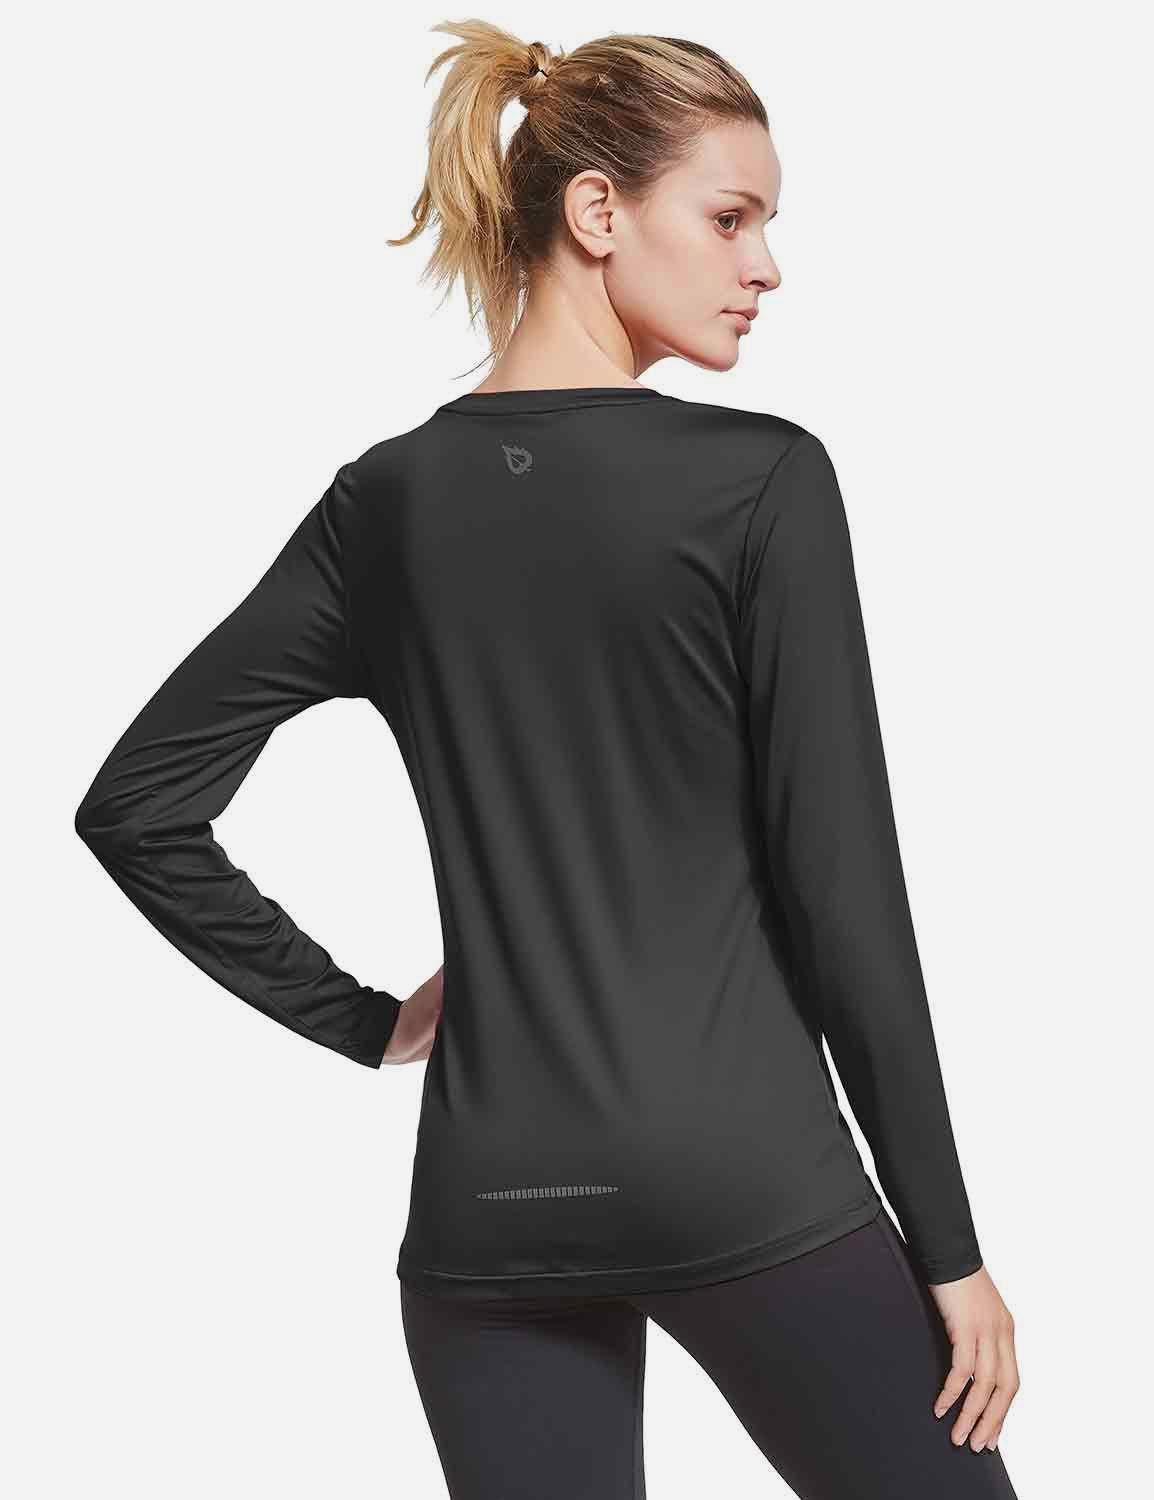 BALEAF Women's Loose Fit Tagless Workout Long Sleeved Shirt abd294 Black Back